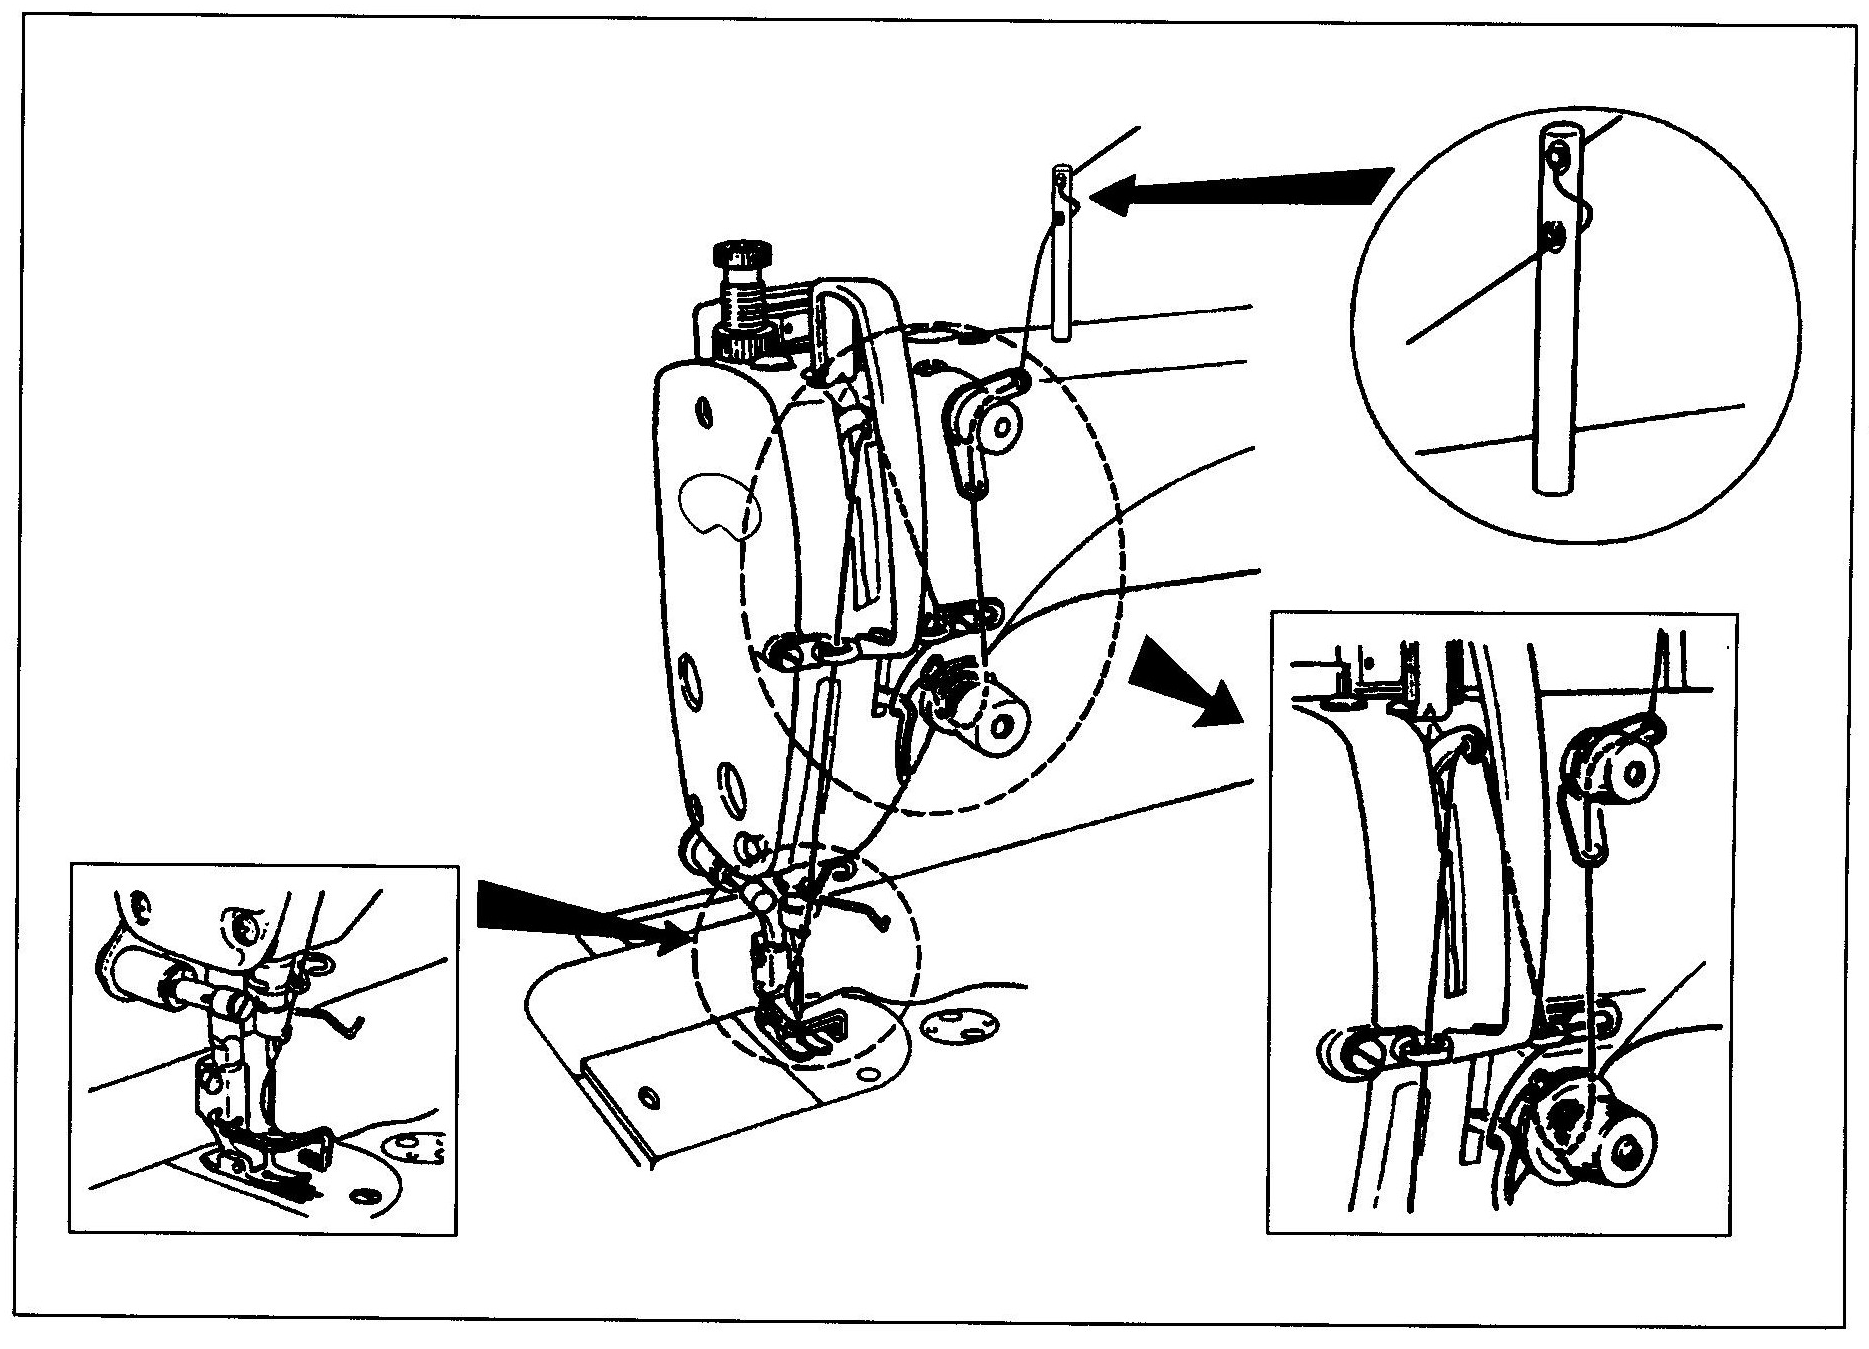 Почему в швейной машине путается нижняя нить и что с этим делать?